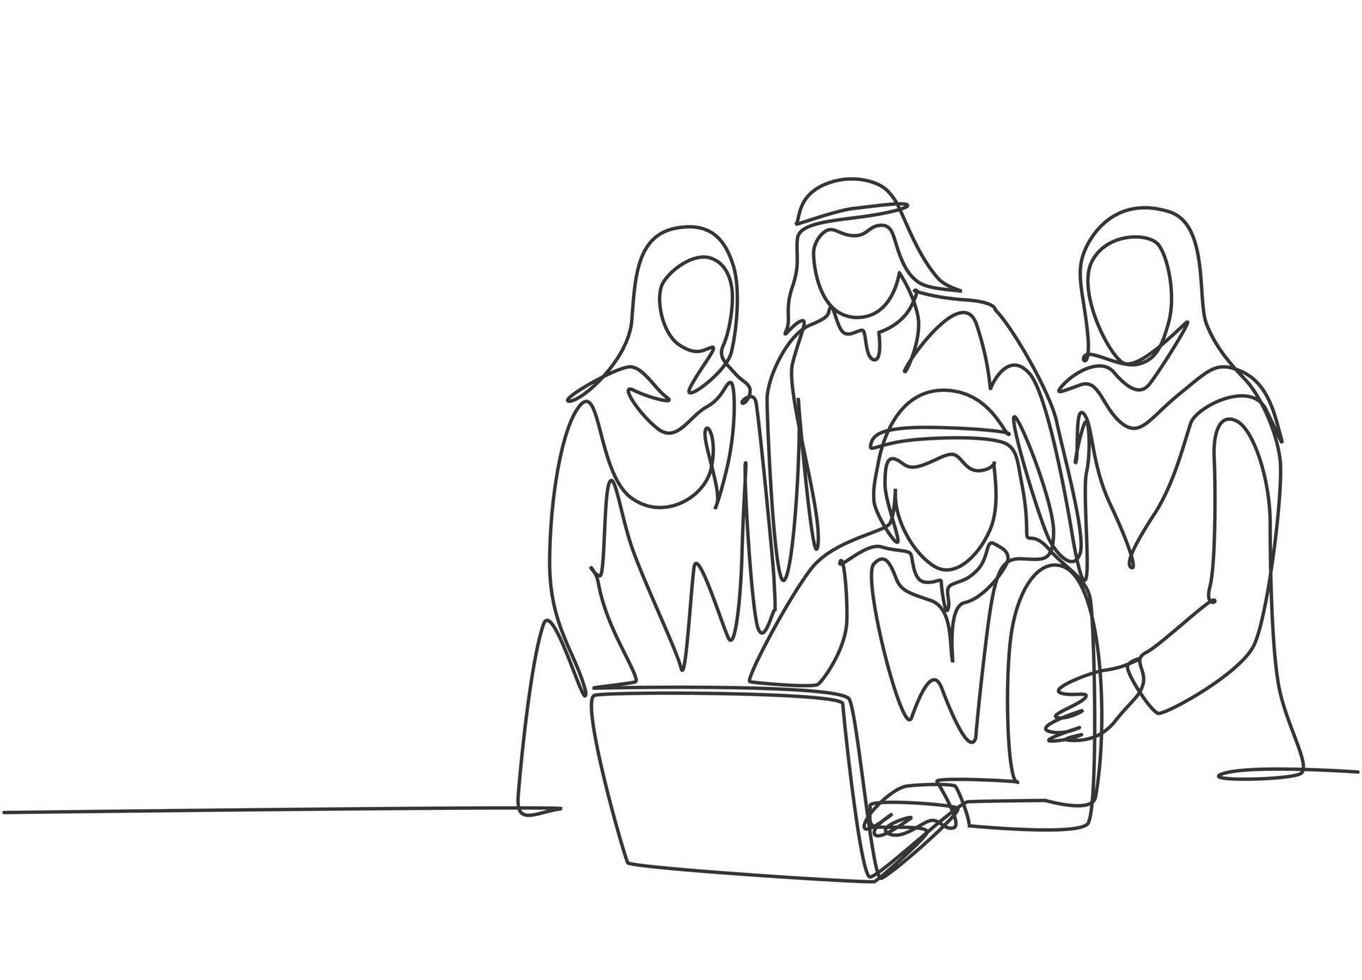 un dibujo de una sola línea de jóvenes miembros del equipo de inicio musulmanes felices posan juntos sólidamente. tela de arabia saudita shmag, kandora, pañuelo en la cabeza, thobe, ghutra. Ilustración de vector de diseño de dibujo de línea continua